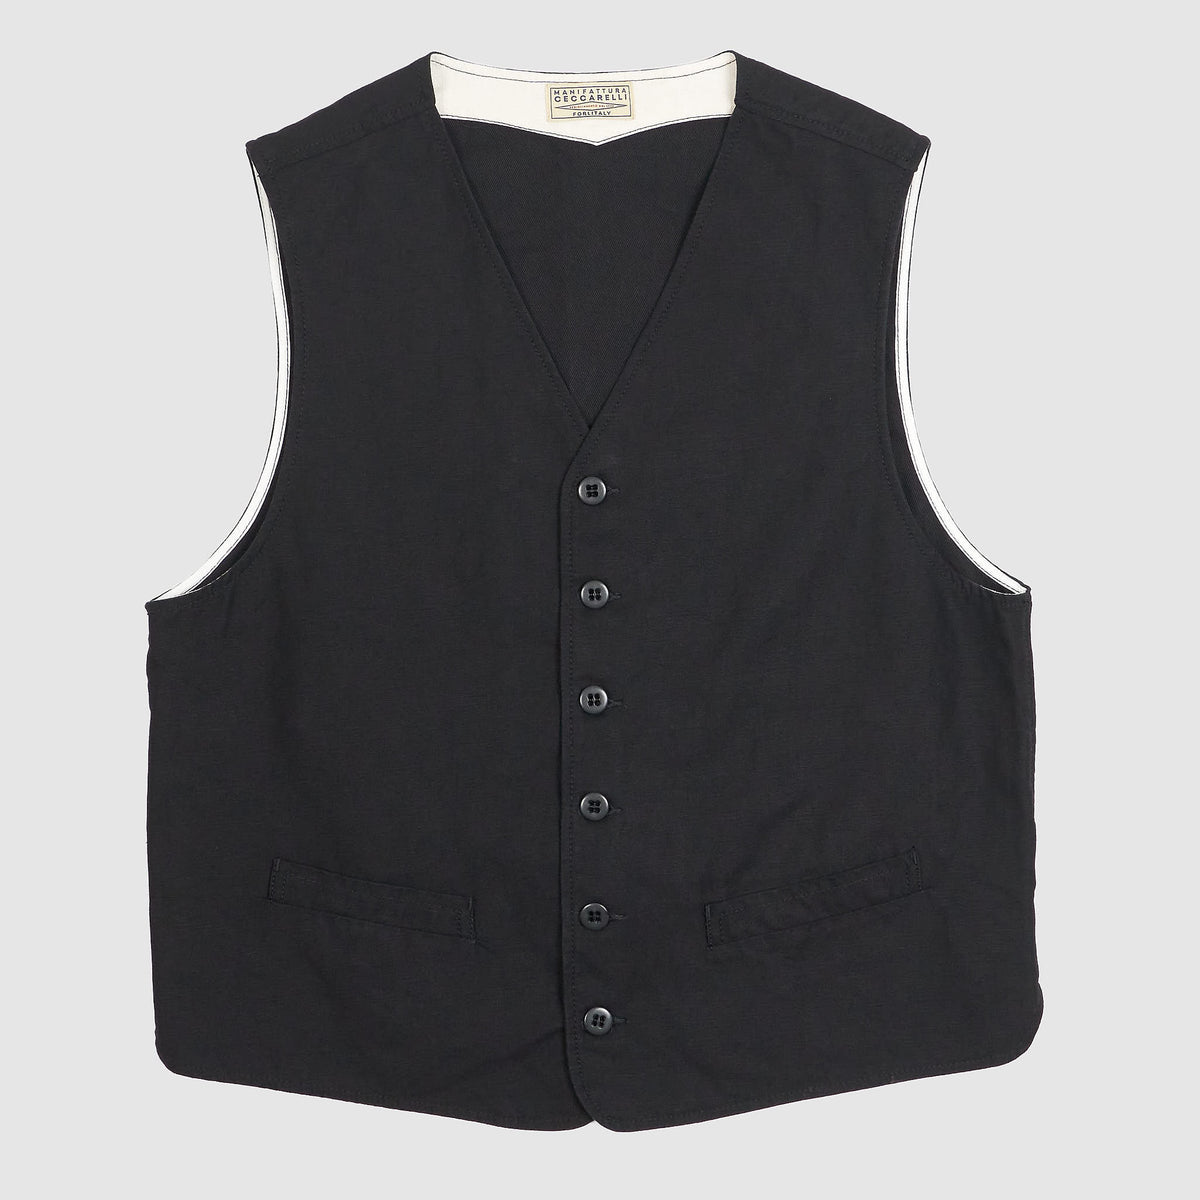 Manifattura Ceccarelli Casual Cotton Vest